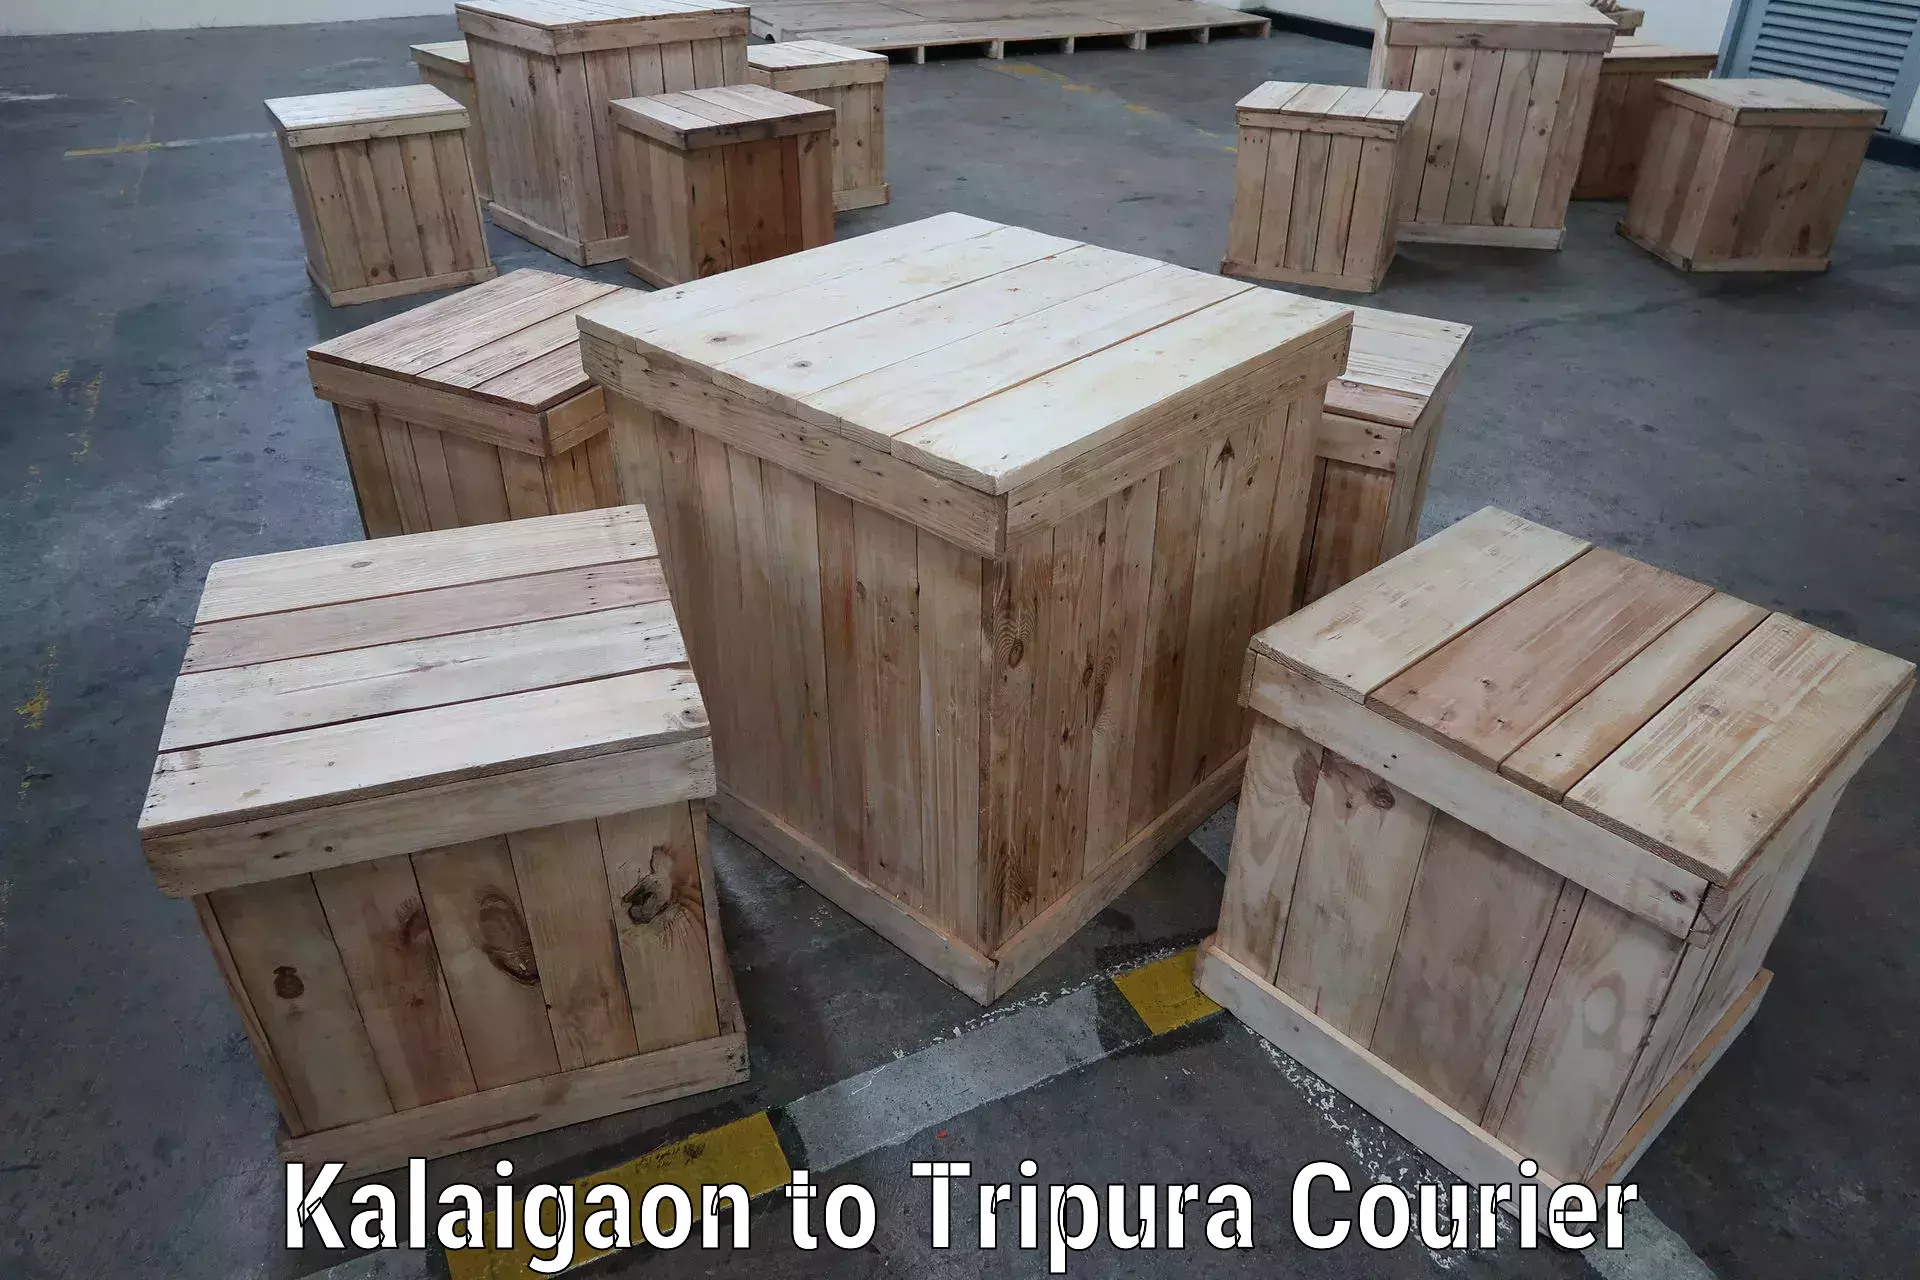 Efficient parcel service Kalaigaon to South Tripura